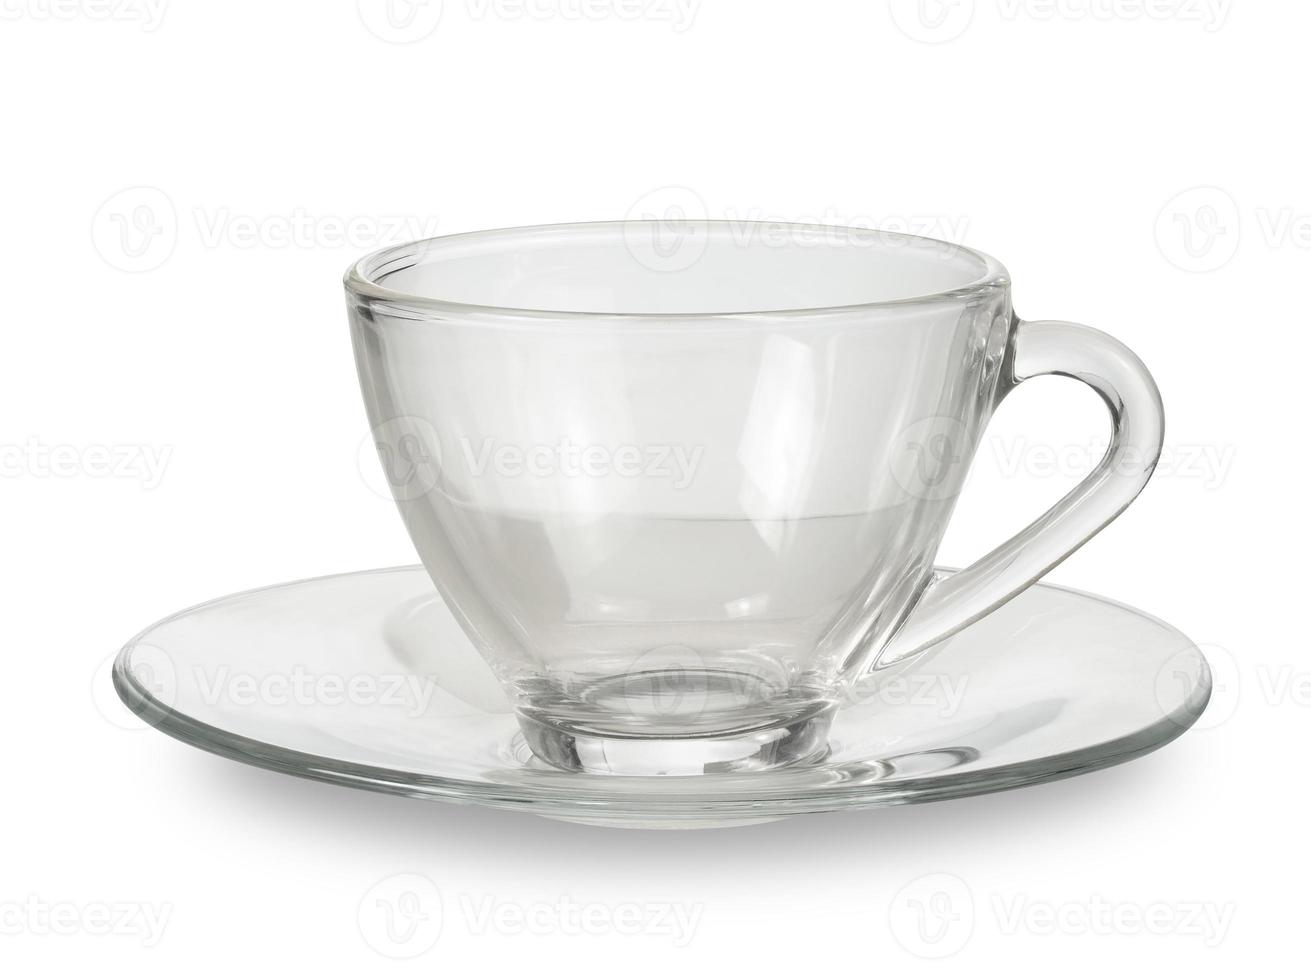 leere transparente kaffee- oder teetasse lokalisiert auf weißem hintergrund, enthalten beschneidungspfad foto